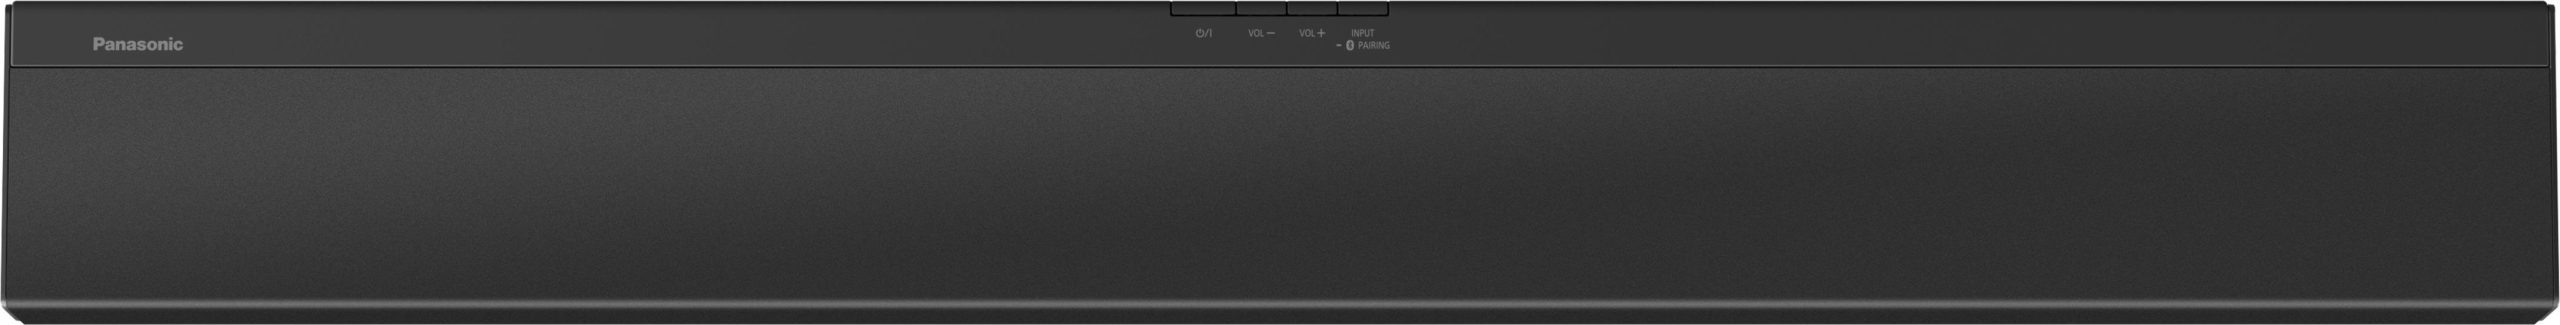 [RICONDIZIONATO] Panasonic SC-HTB490 Soundbar 320W Surround 2.1 Bluetooth Subwoofer Wireless-a-rate-senza-busta-paga-scalapay-pagolight